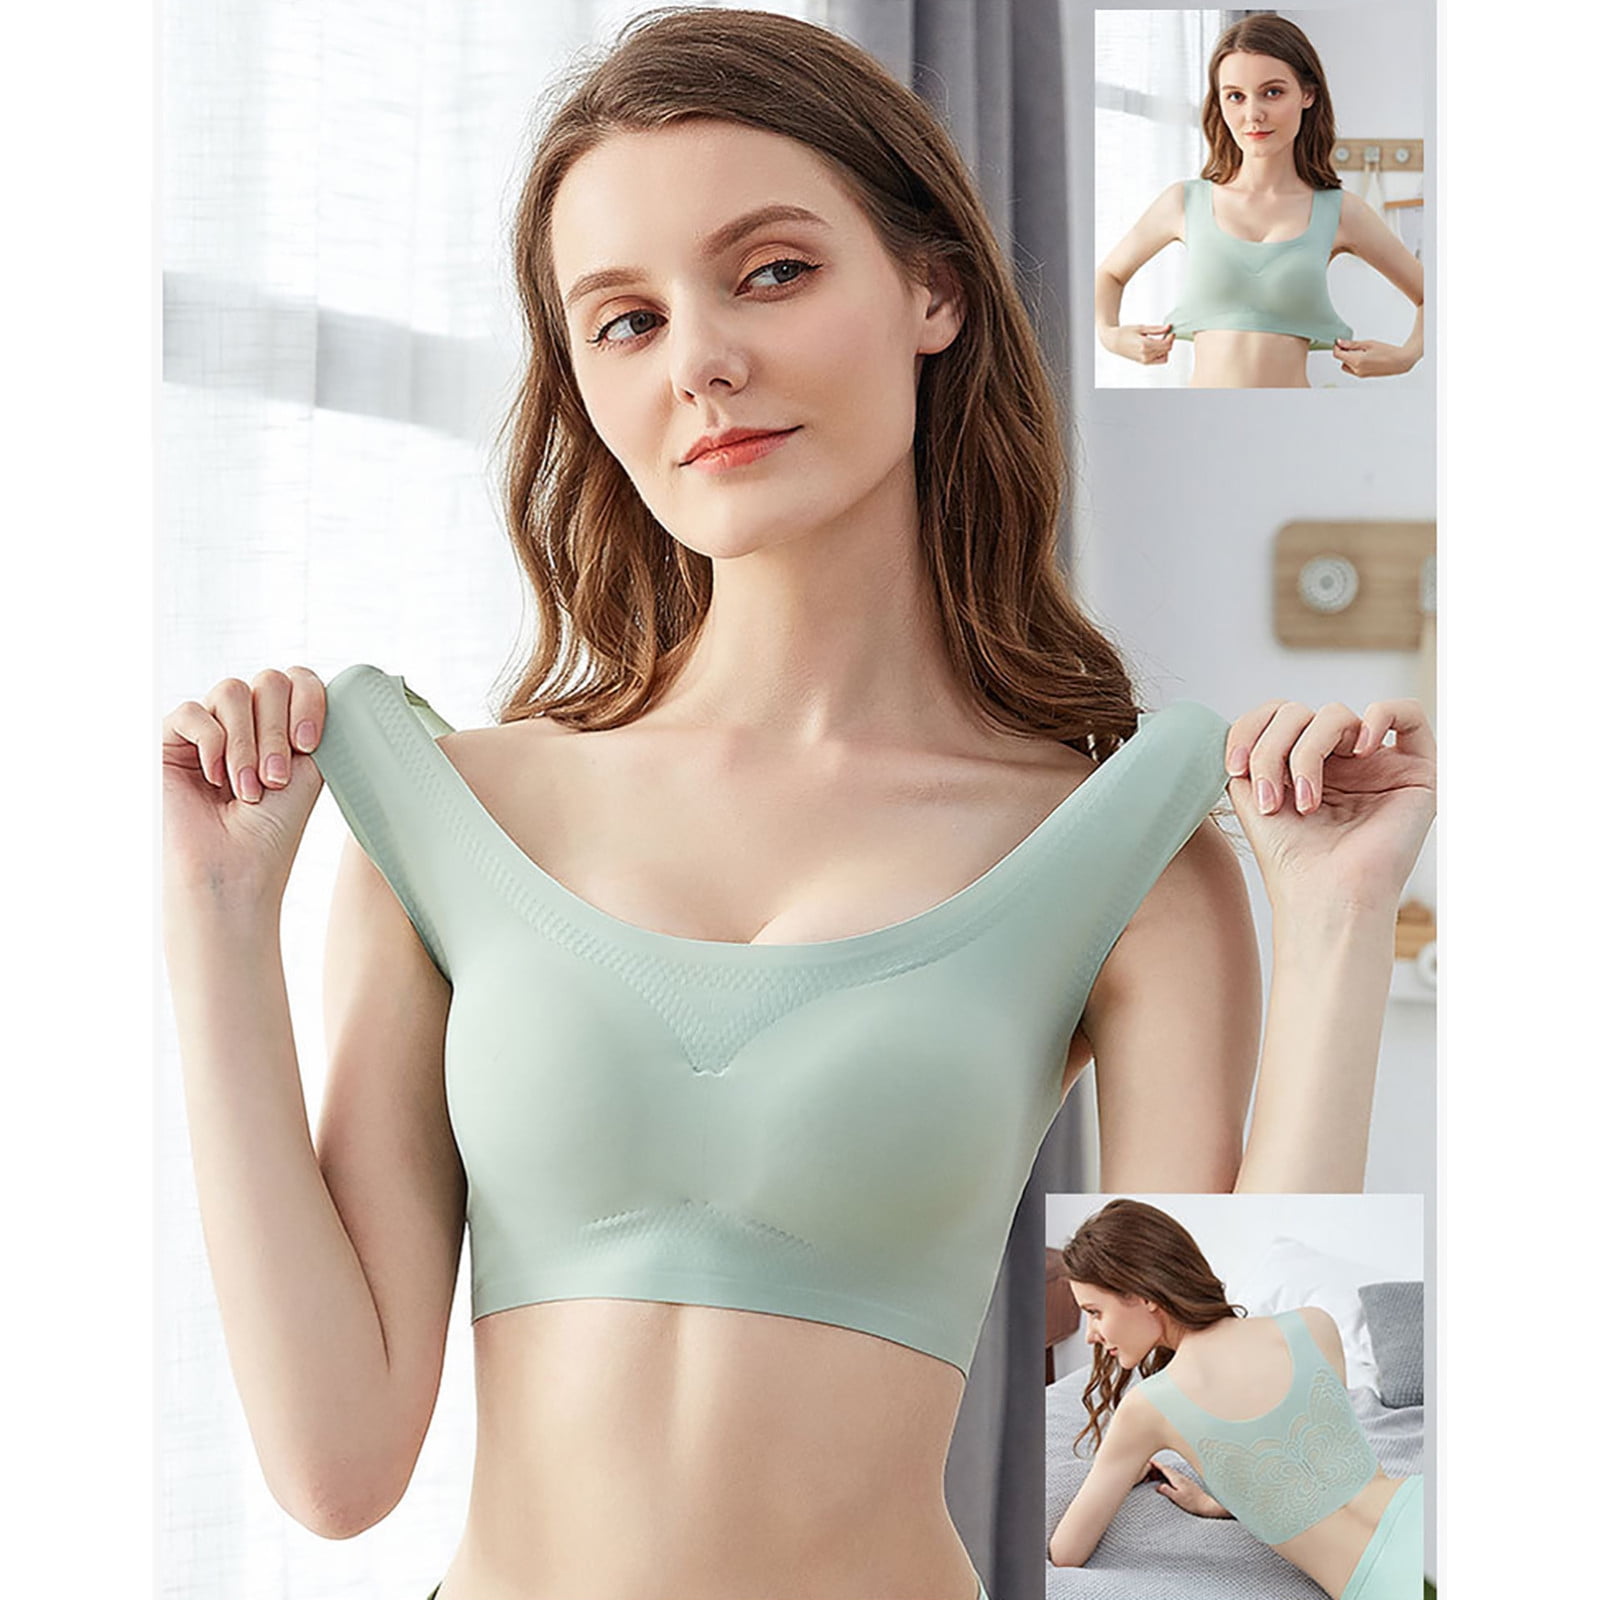 LEEy-World Lingerie for Women Women's Bras Wireless Full Coverage Plus Size  Minimizer Non Padded Comfort Soft Bra Multipack Khaki,M